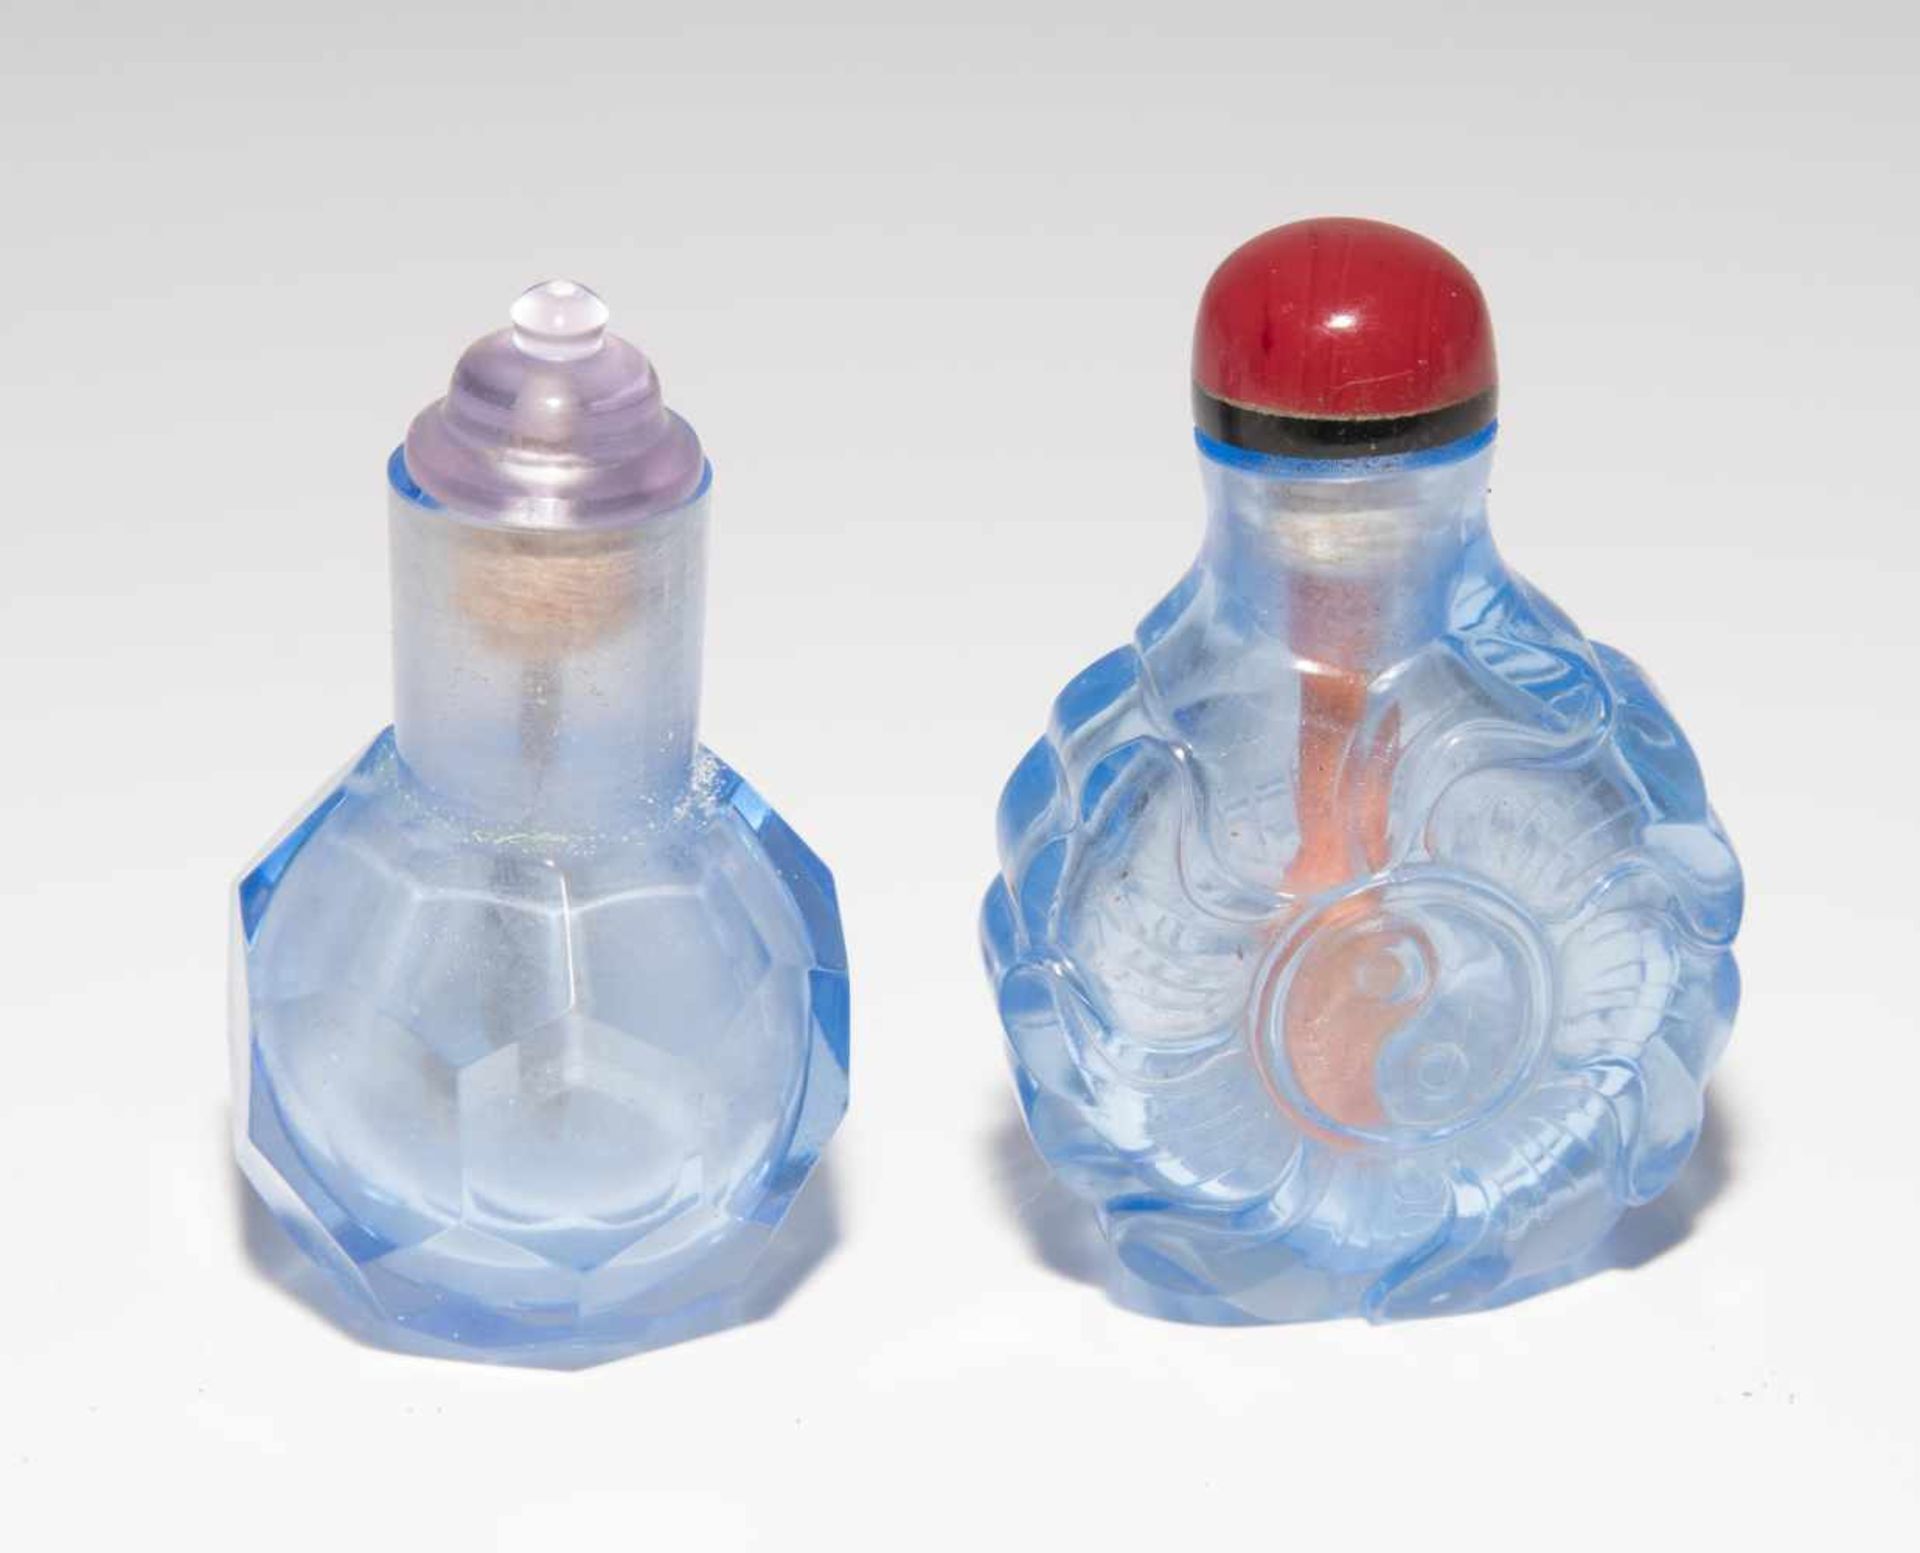 6 Glas Snuff BottlesChina. Hellblaues, transparentes Glas. Ein Doppel-Snuff Bottle, zwei mit - Bild 8 aus 22